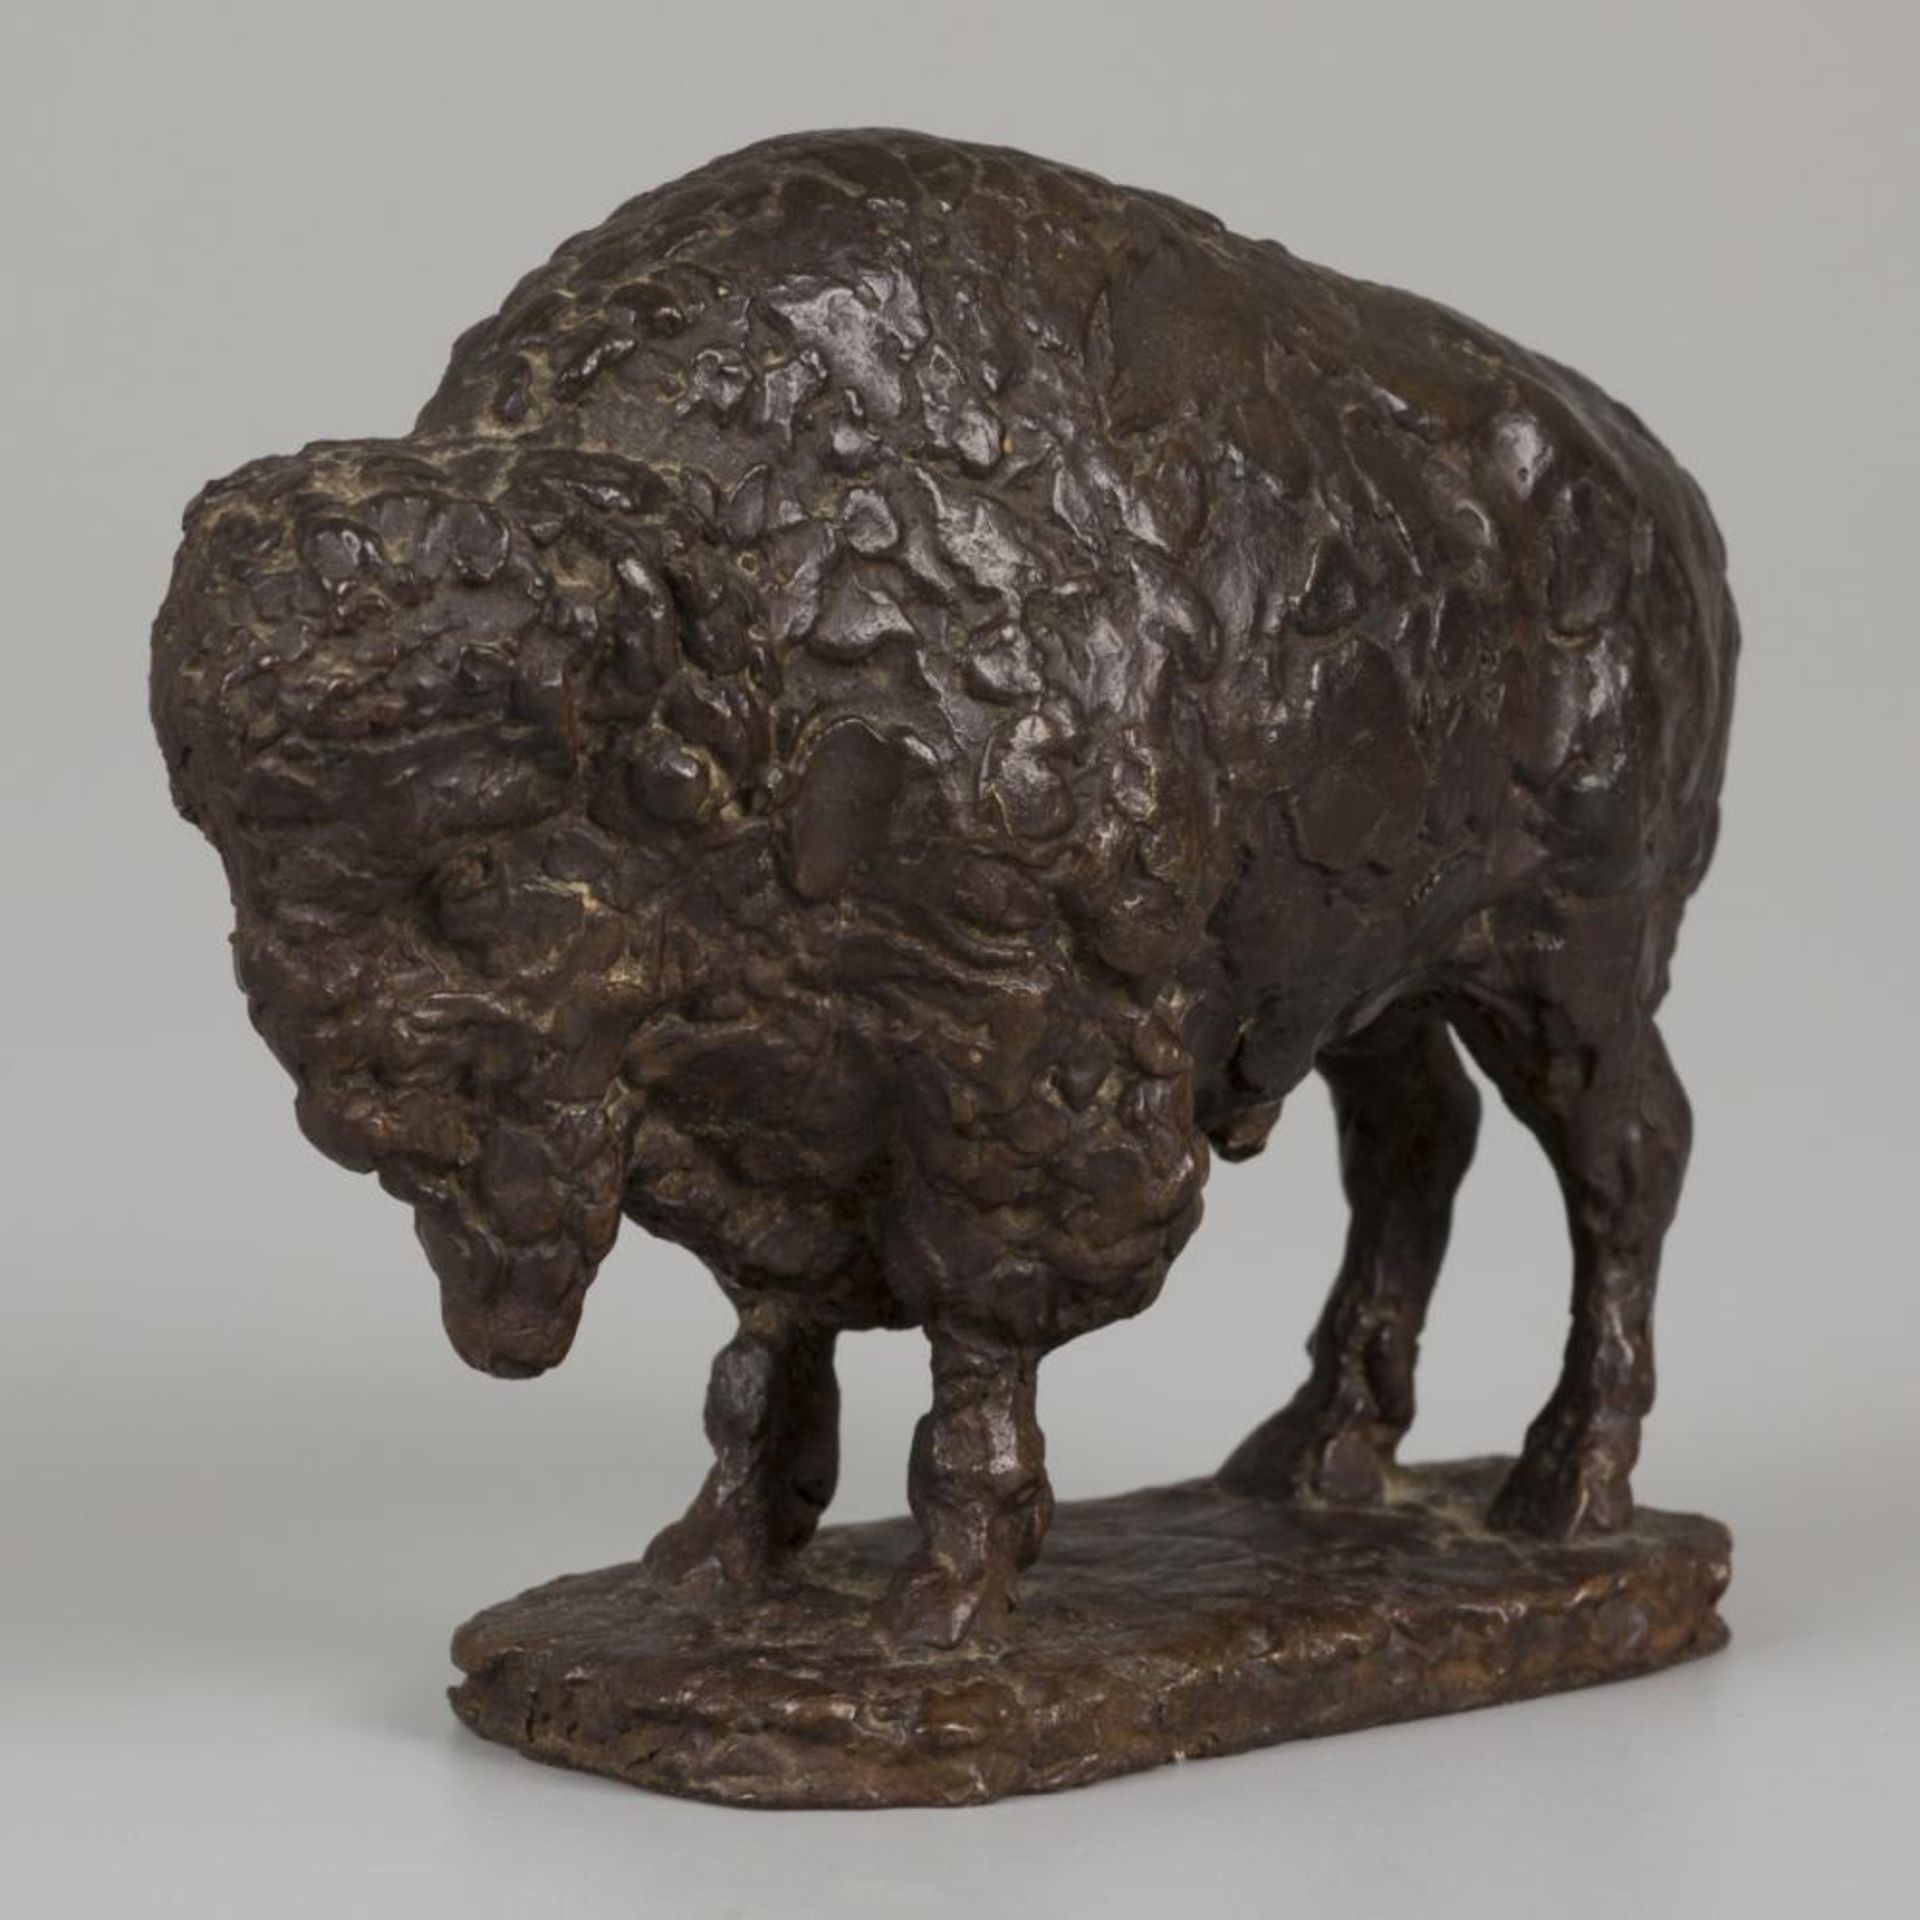 Pieter D'HONT (1917-1997), a bronze sculpture of a bison.